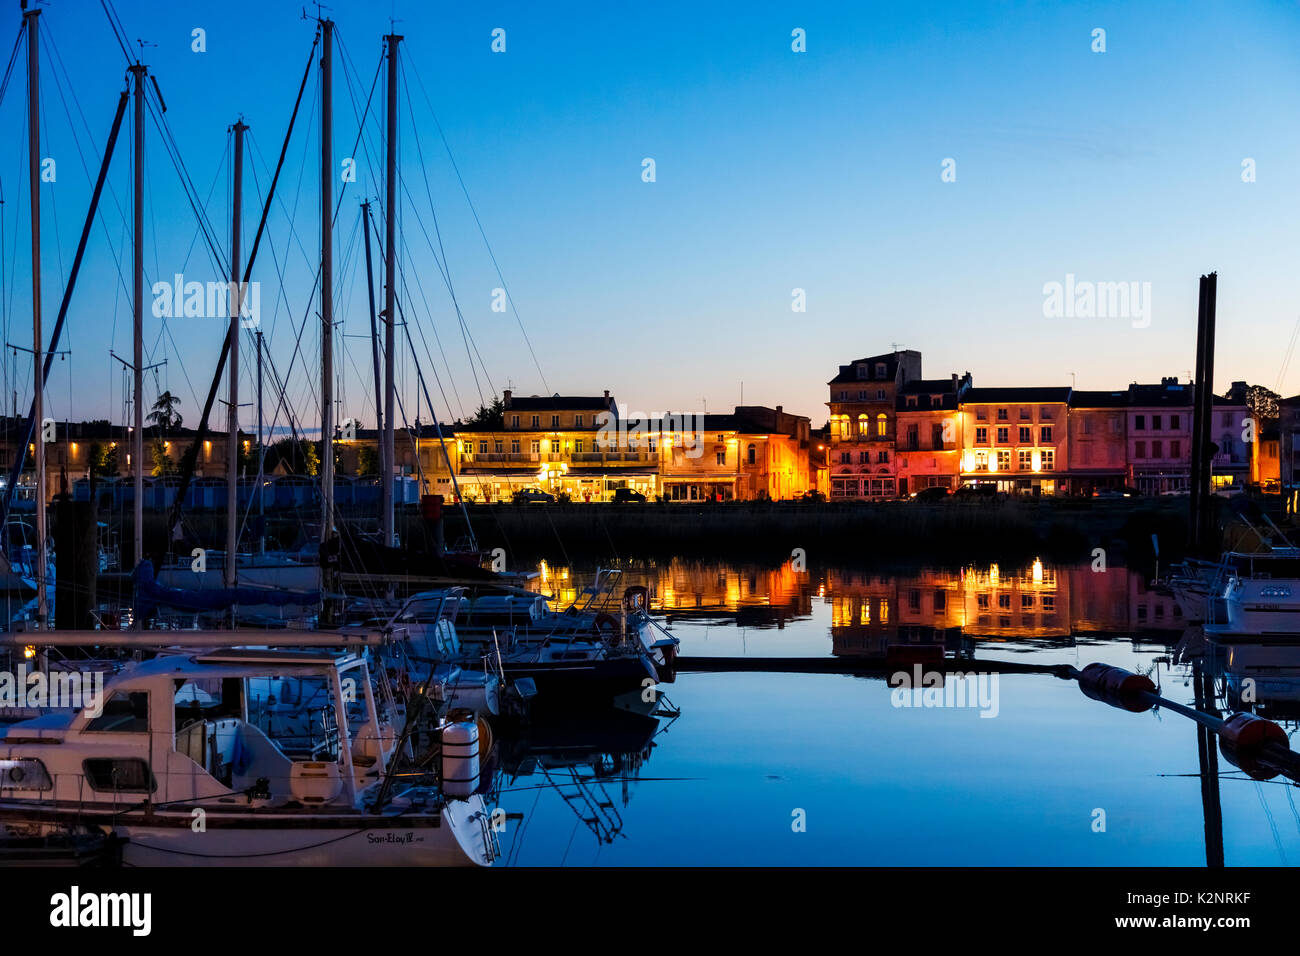 Port de plaisance de Pauillac dans la nuit, des yachts, des réflexions et des bâtiments illuminés, l'estuaire de la Gironde, département de la Gironde, Nouvelle-Aquitaine sud ouest France Banque D'Images